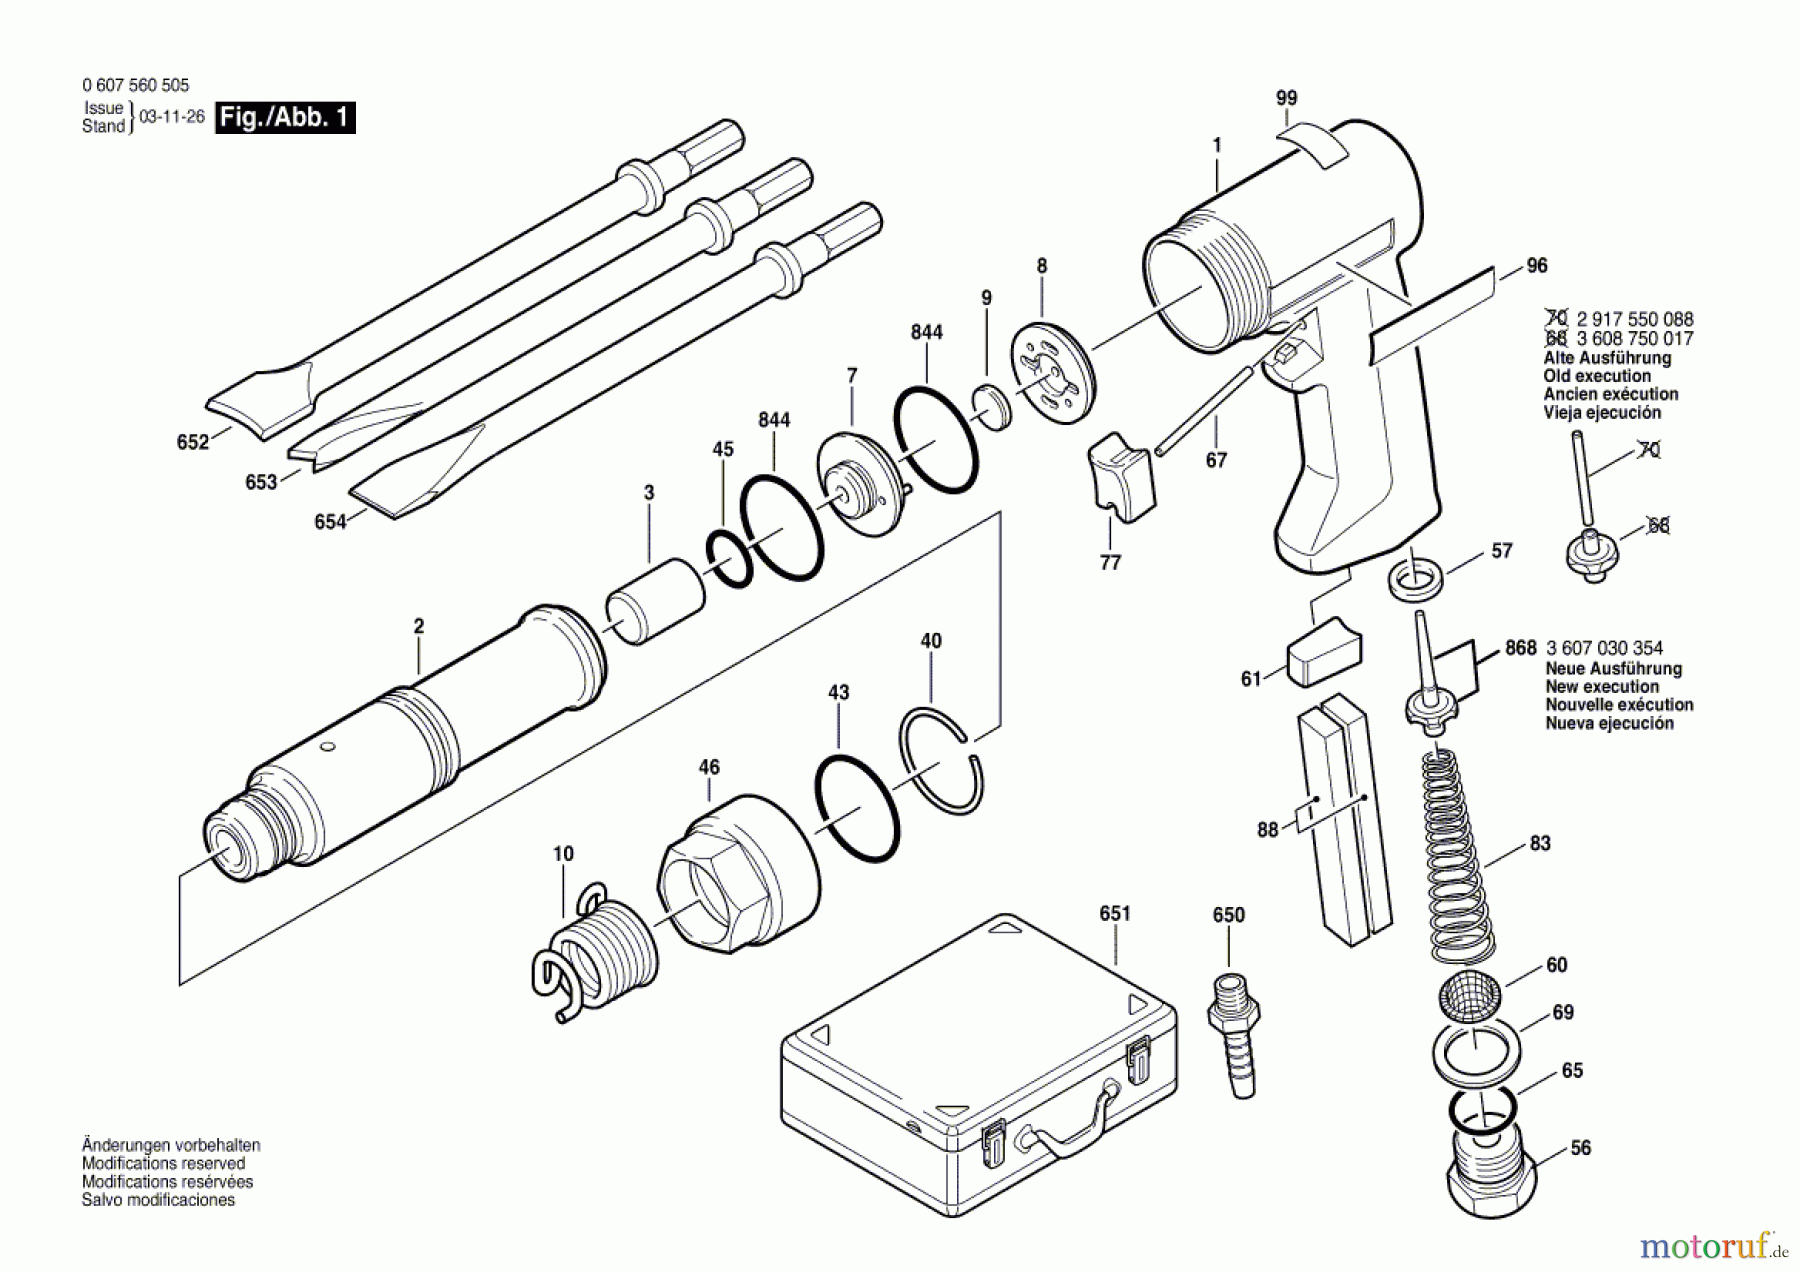  Bosch Werkzeug Pw-Meisselhammer-Set DMH 320 Seite 1